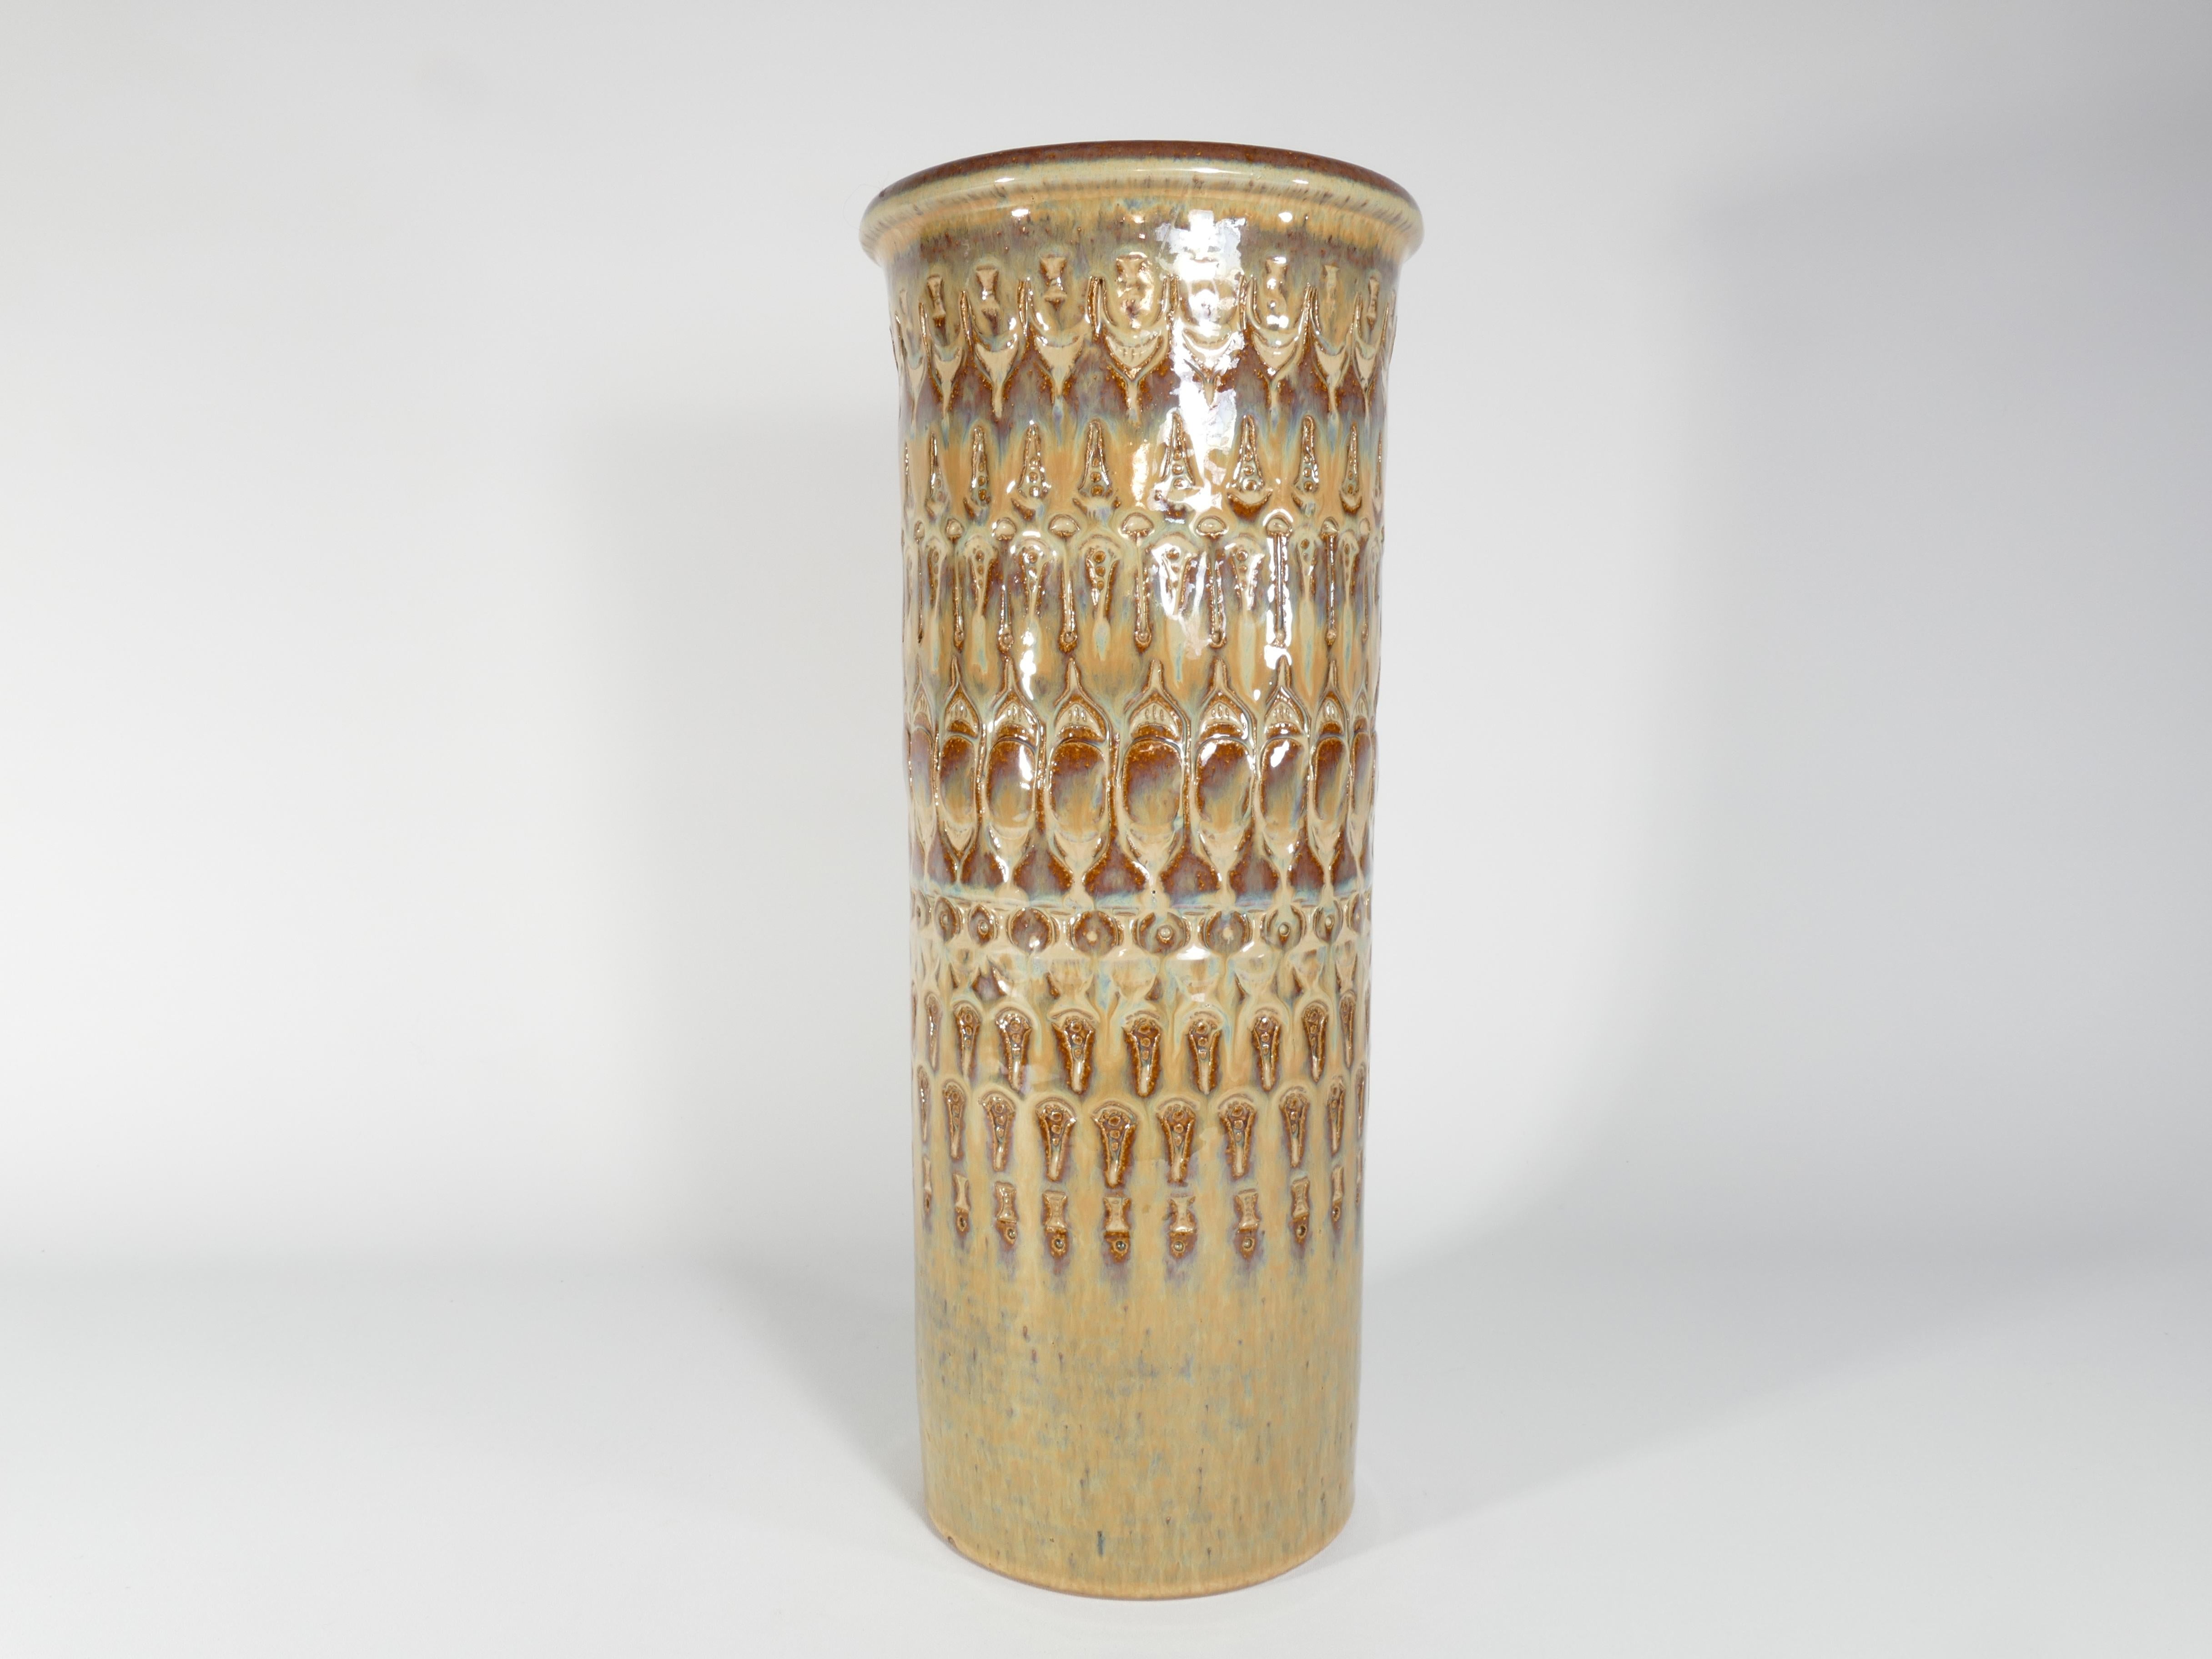 Fabriqué à la main au milieu du XXe siècle, ce grand (40 cm) et exquis vase de sol en grès porte la marque distinctive de Søholm Stentøj. Produit par la célèbre entreprise danoise Soholm Stentoj sur l'île pittoresque de Bornholm, ce vase capture